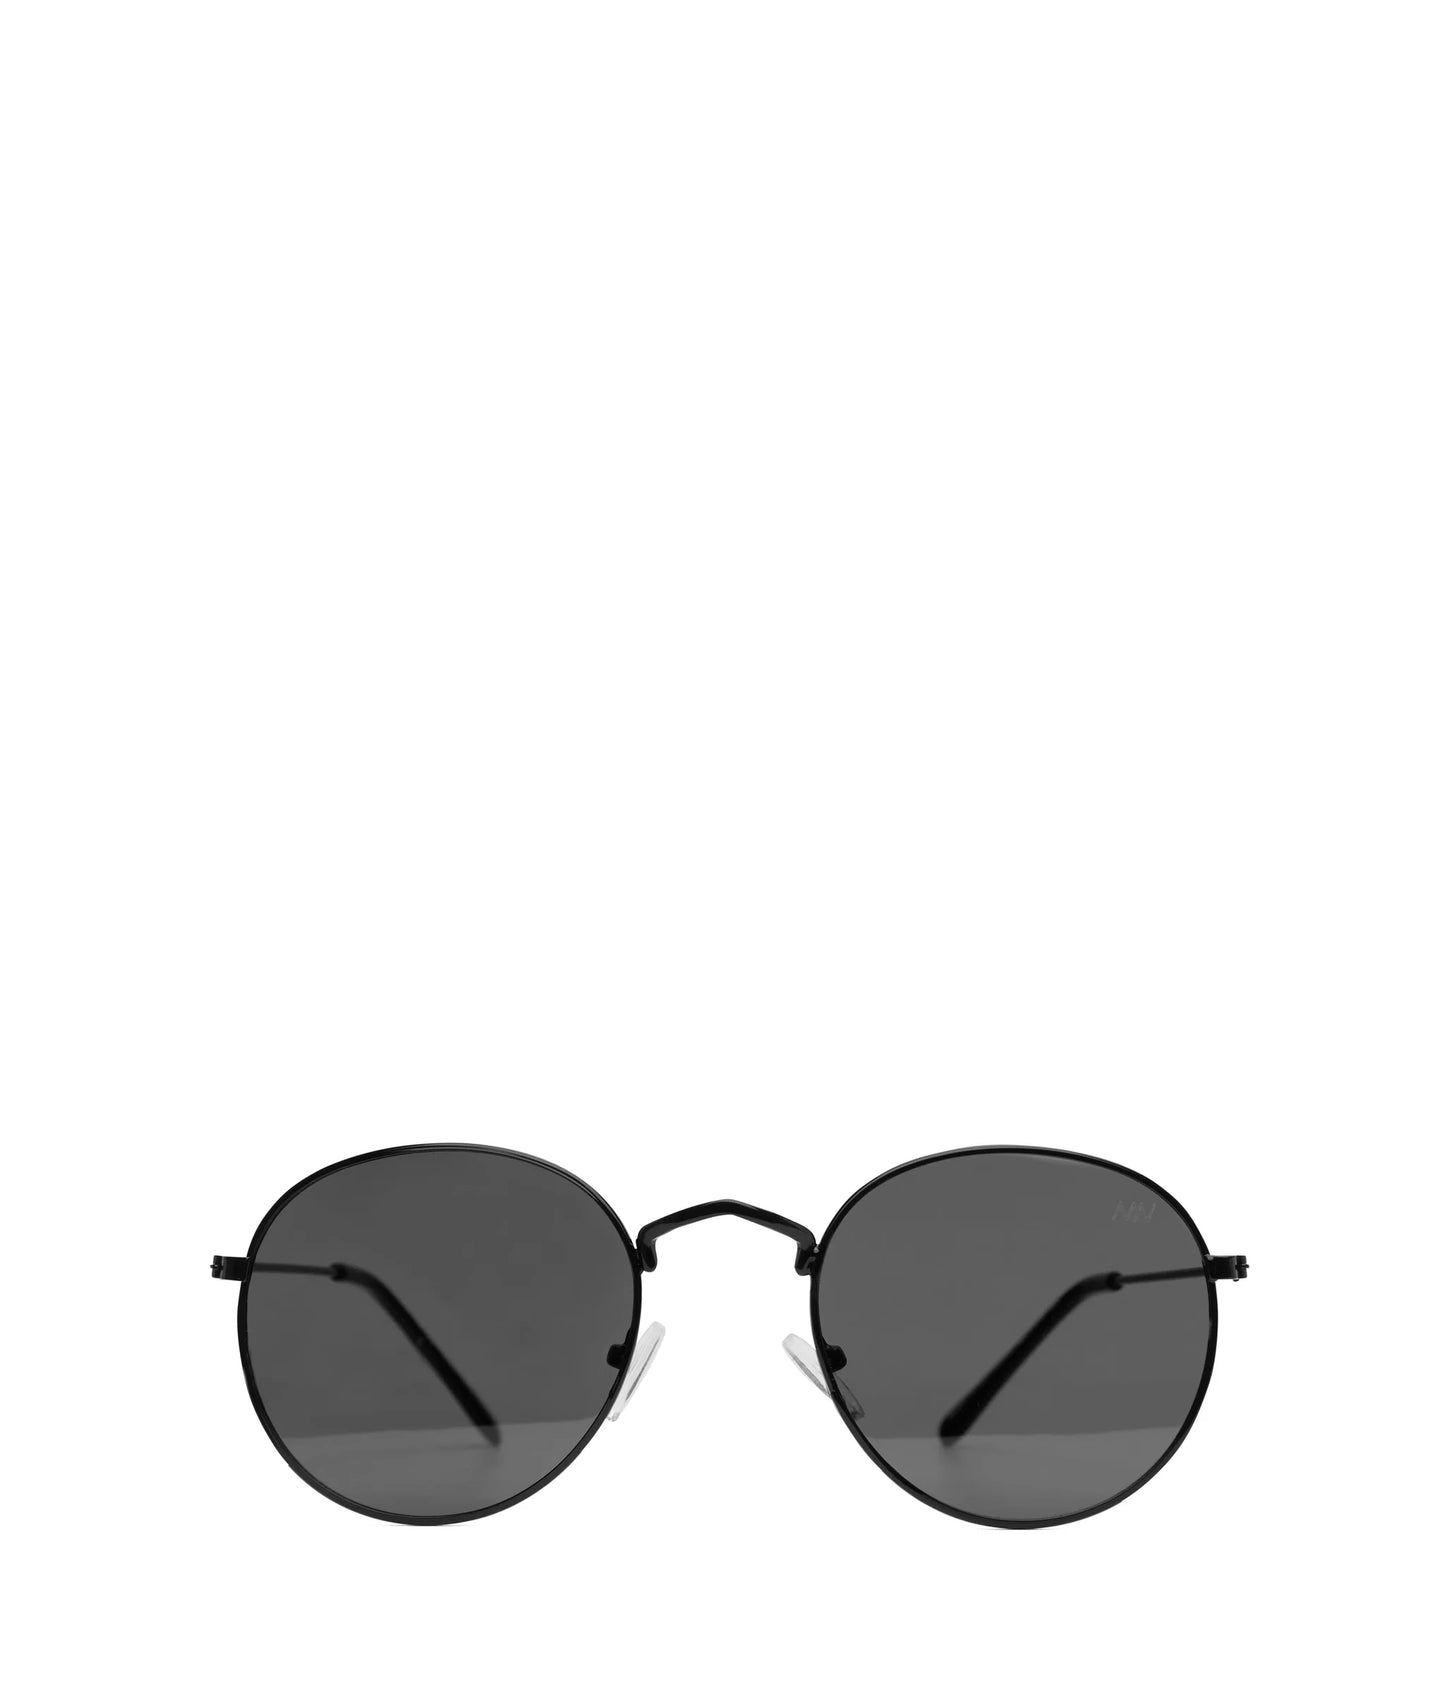 Tolli Round Sunglasses